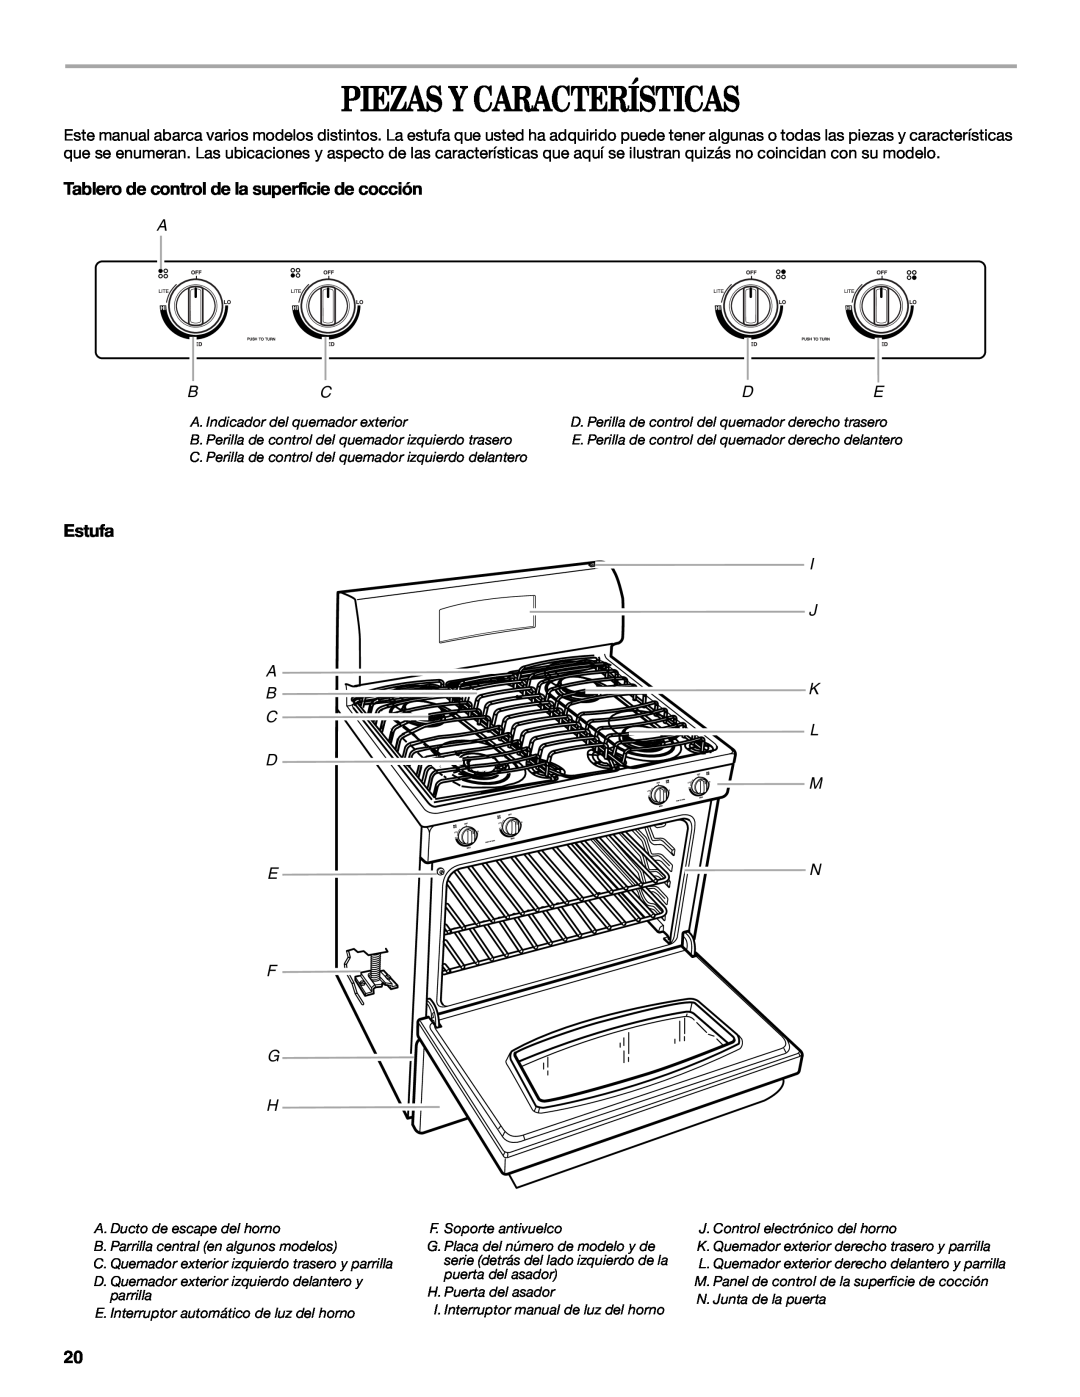 Whirlpool SF315PEPB1 manual Piezas Y Características, Tablero de control de la superficie de cocción, Estufa, F G H 